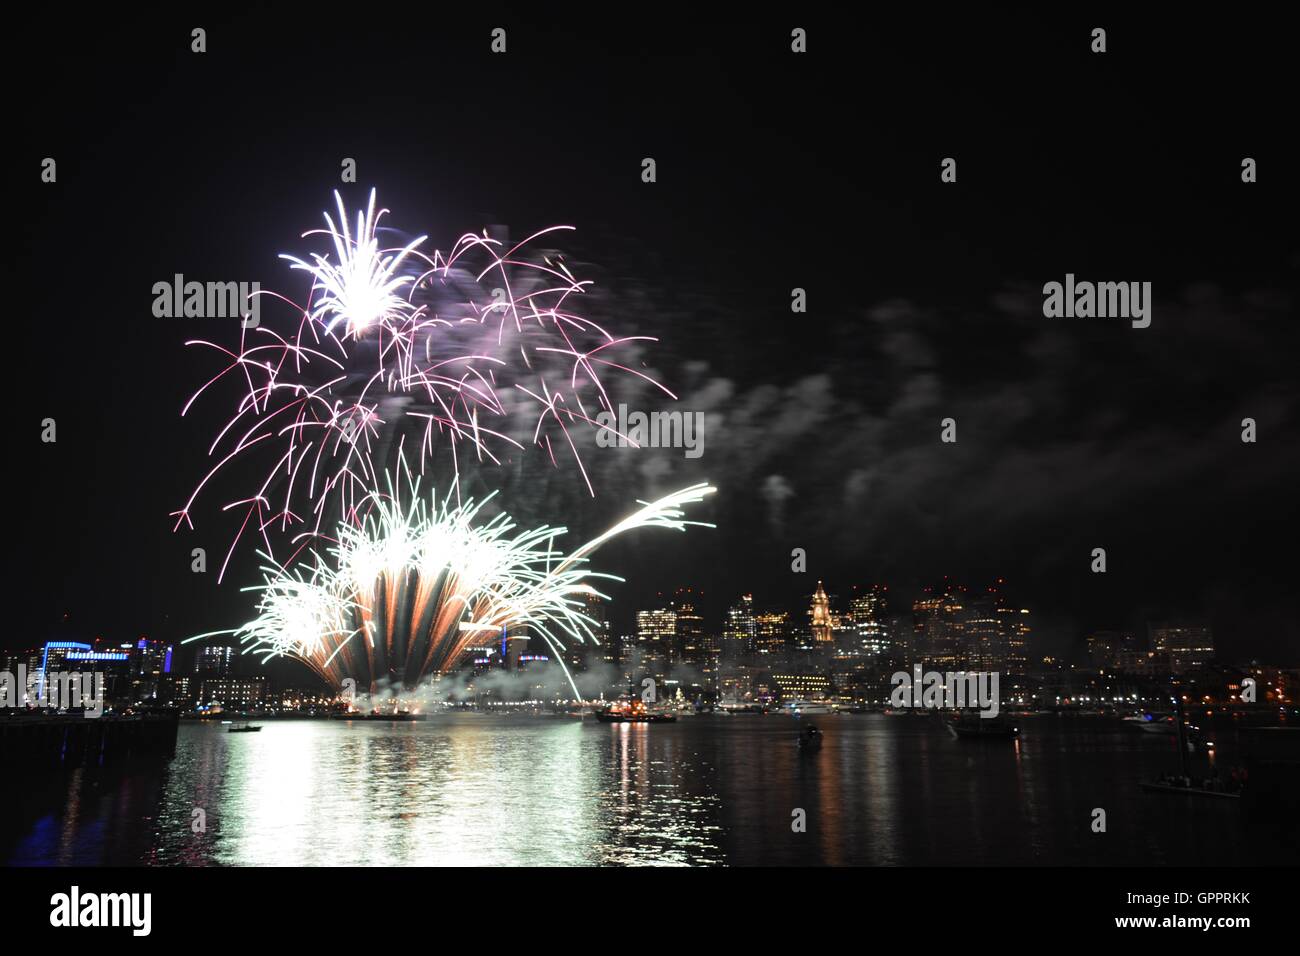 Labor Day fireworks over Boston Harbor in Boston, Massachusetts Stock